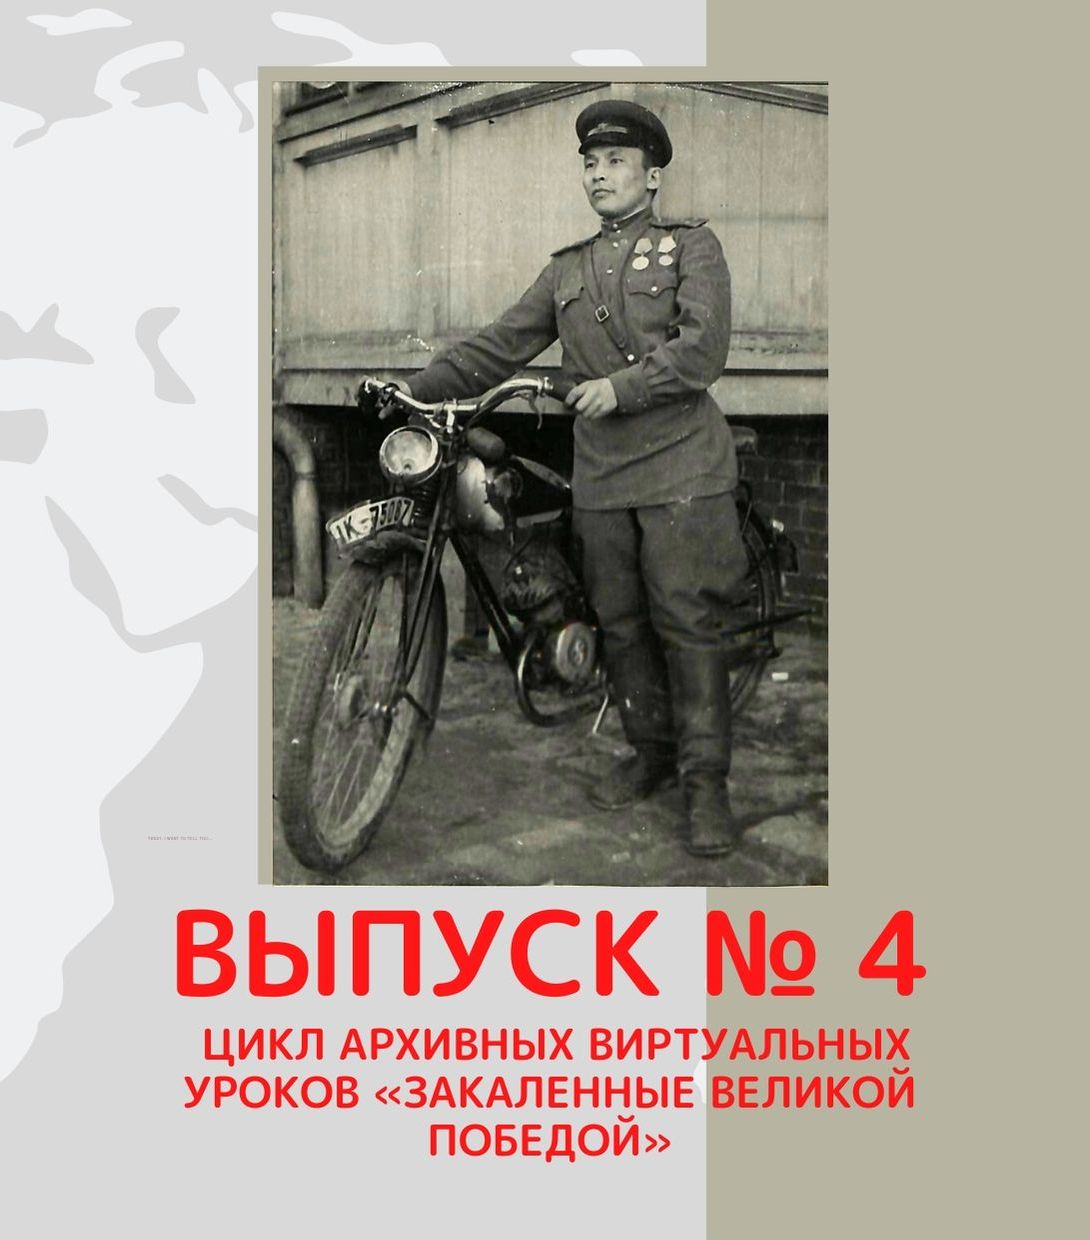 Национальный архив продолжает знакомить с участниками Великой Отечественной войны из Хакасии